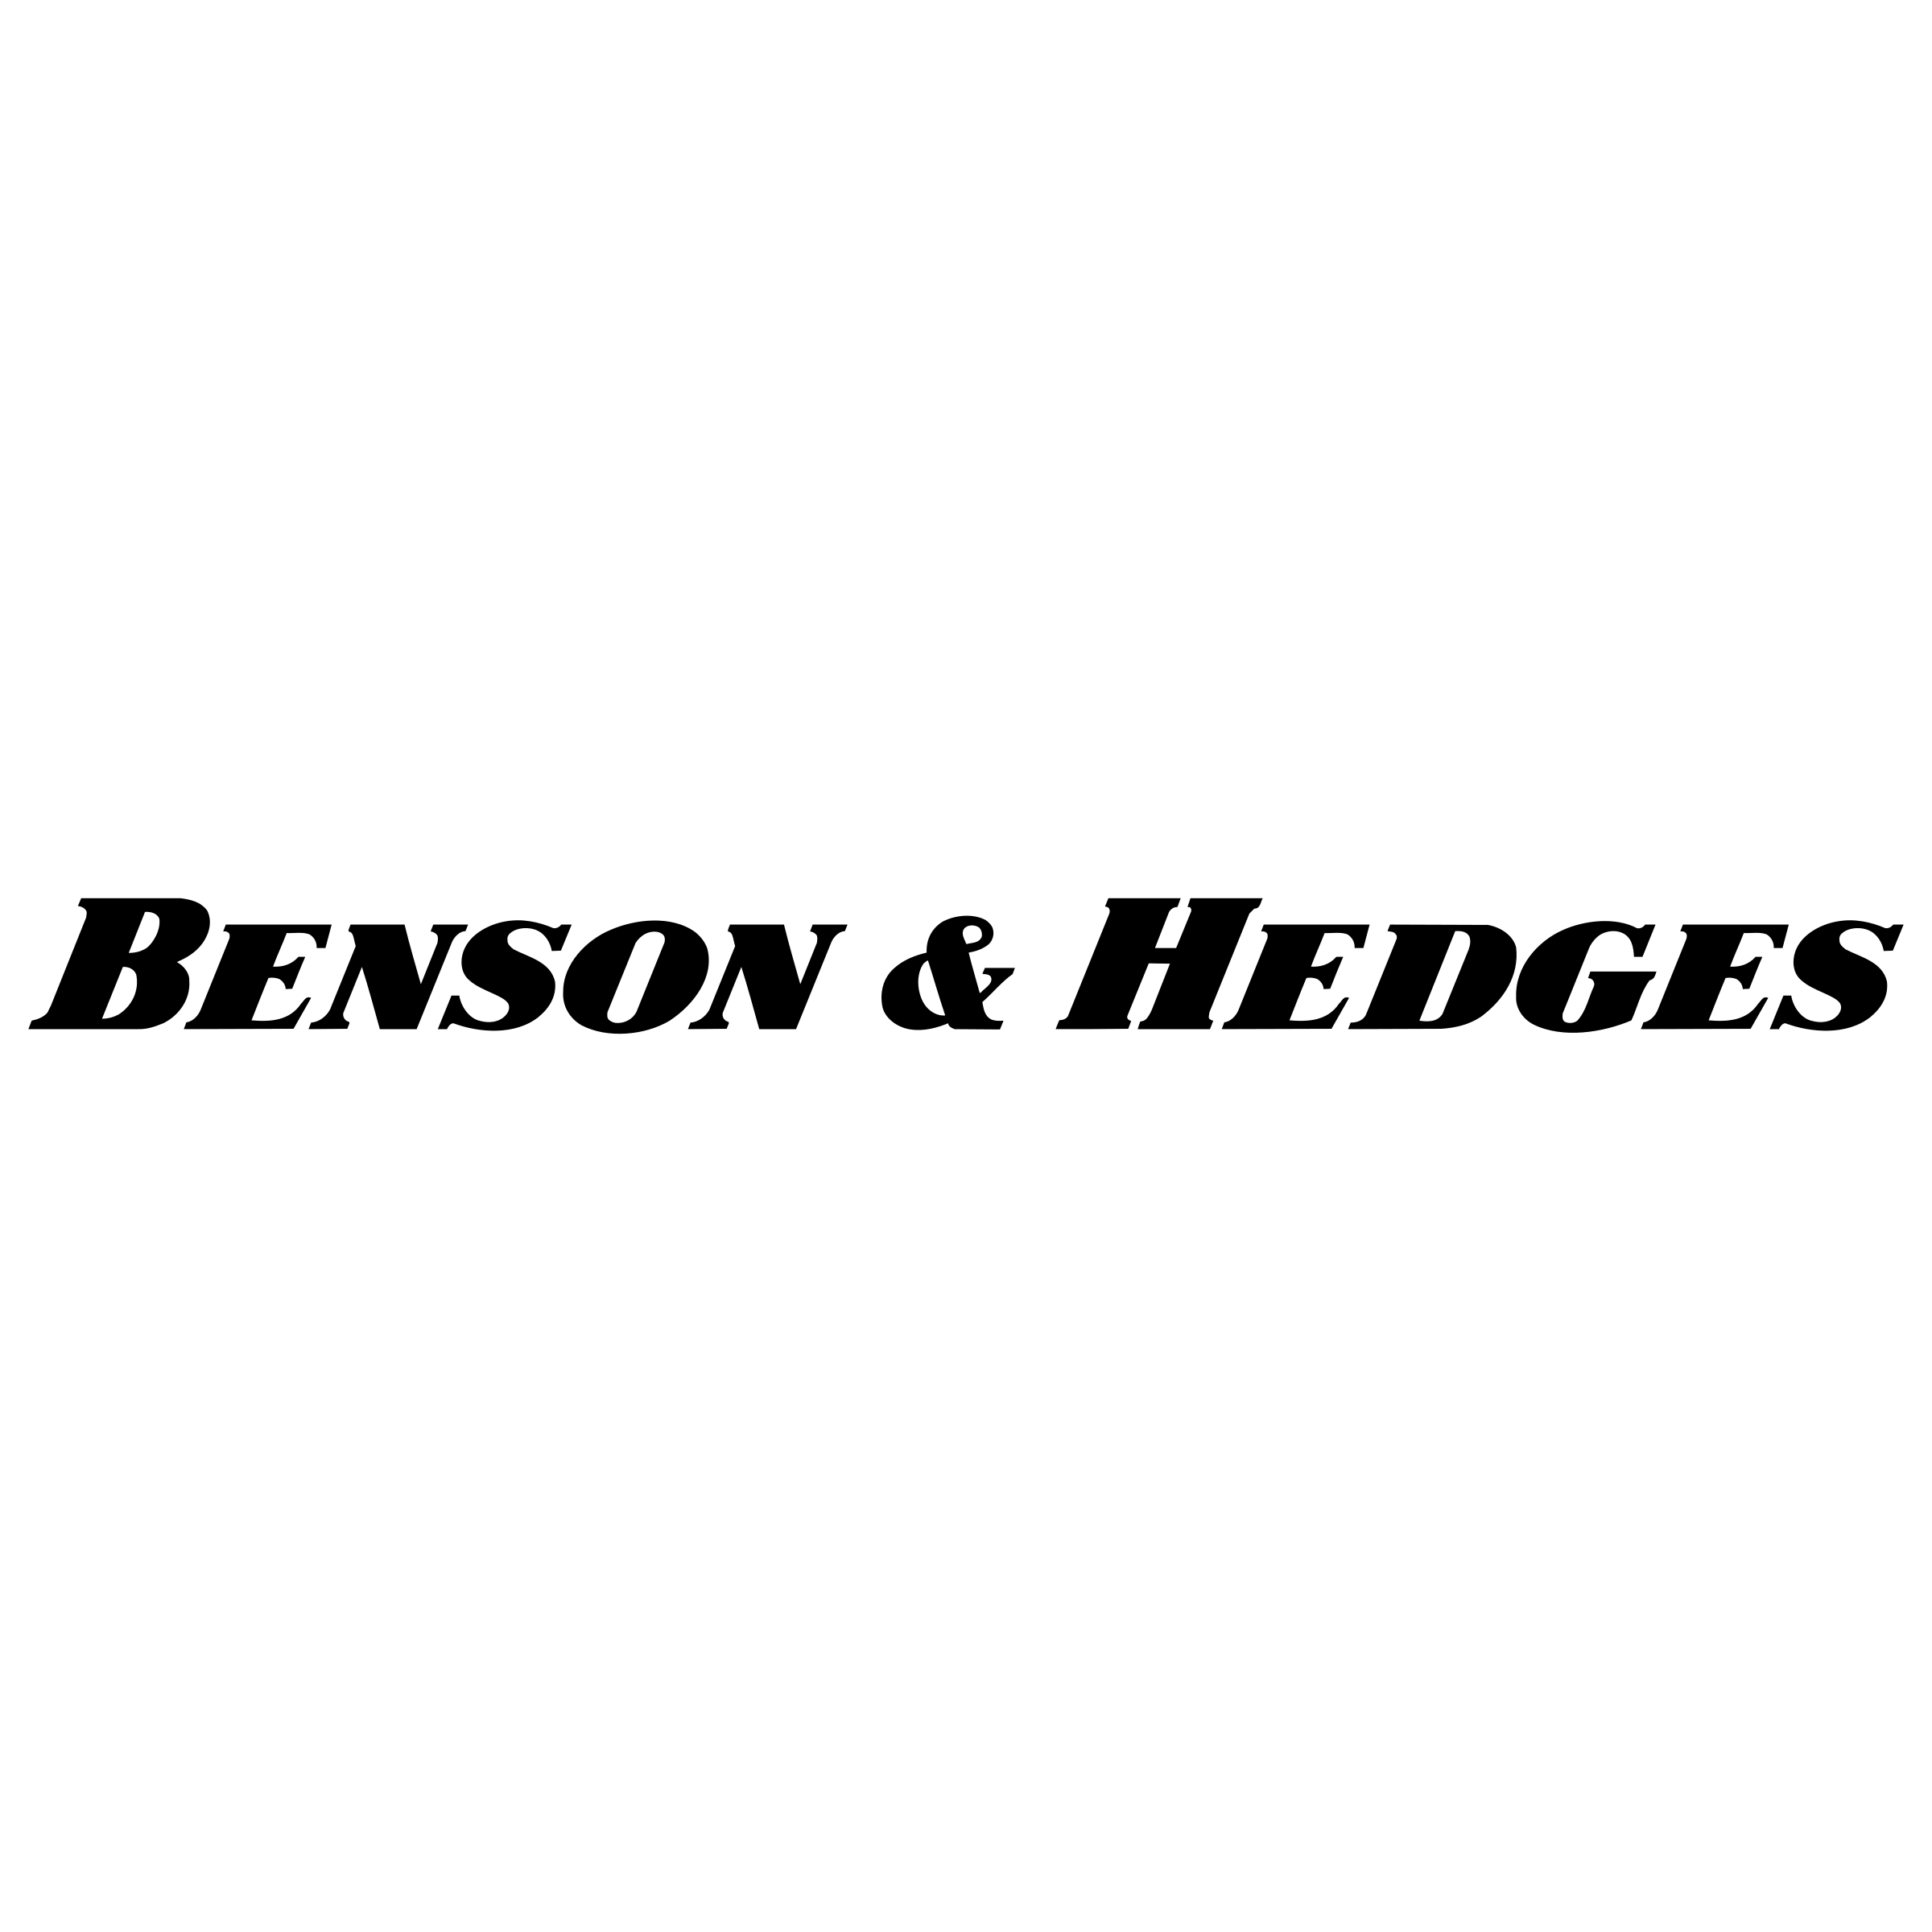 Benson Logo - Benson & Hedges 01 Logo PNG Transparent & SVG Vector